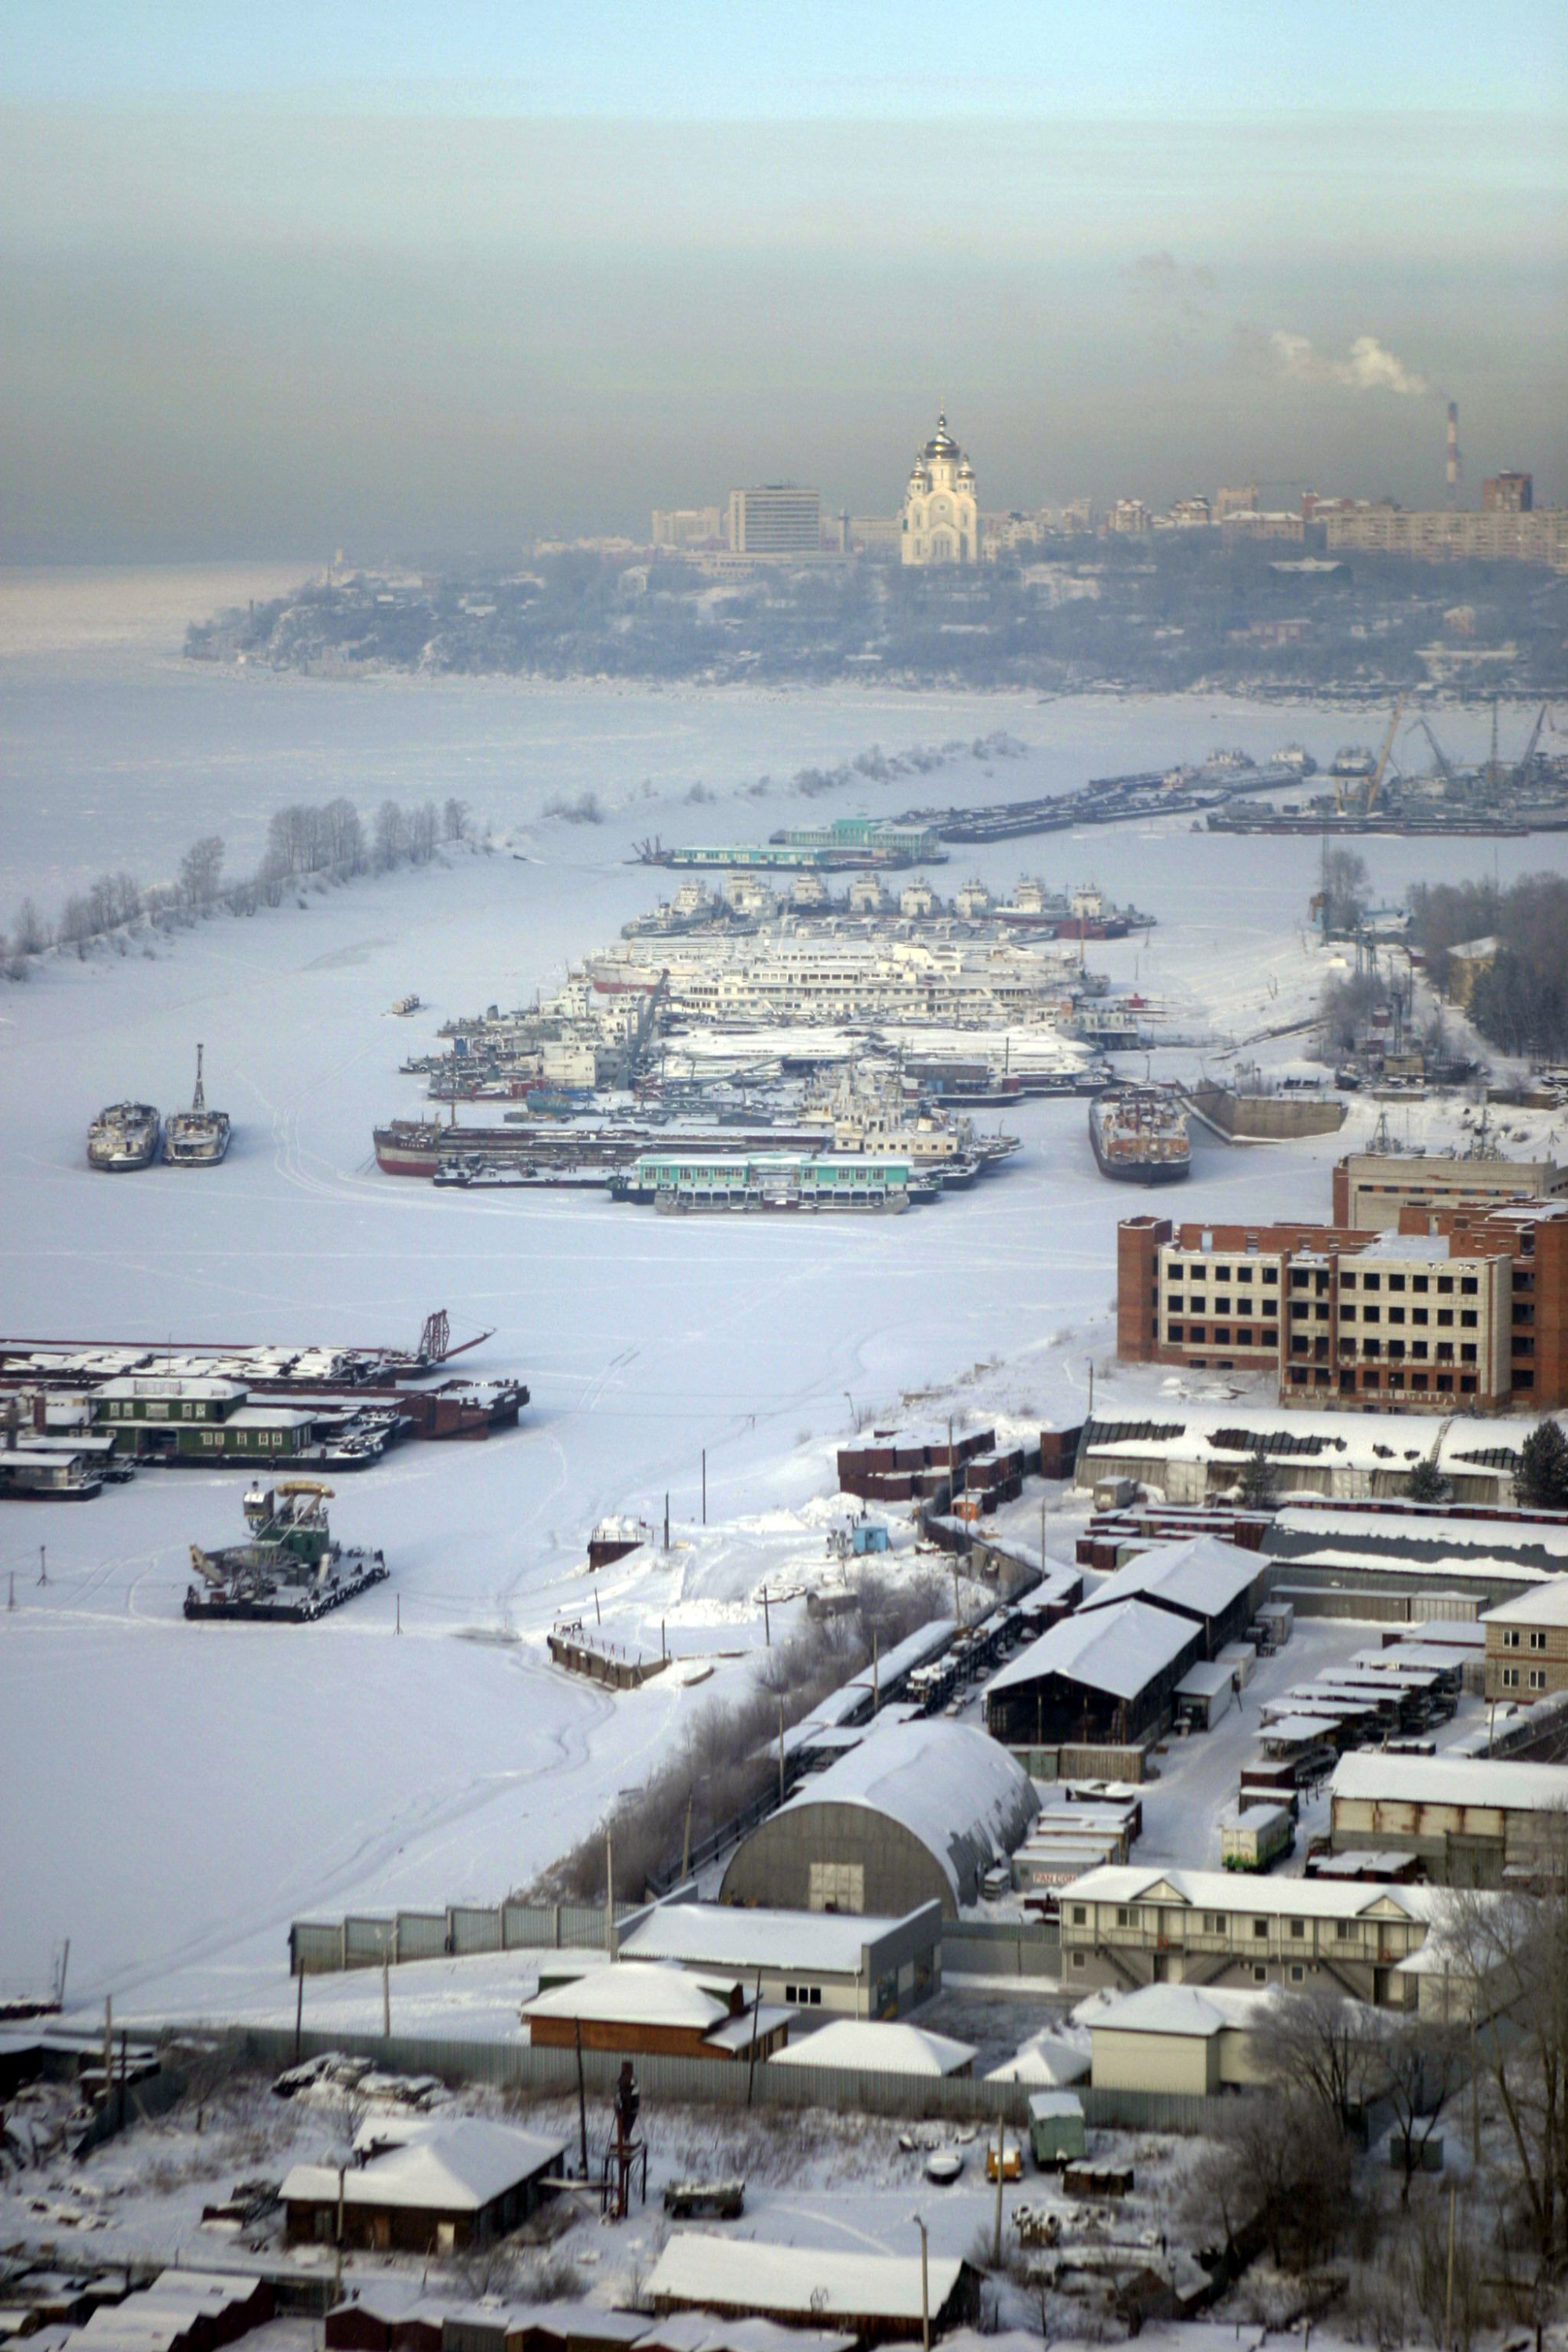 Хабаровск — порт, большой город, а теперь ещё и центр футбола. Фото: © РИА Новости/Руслан Кривобок